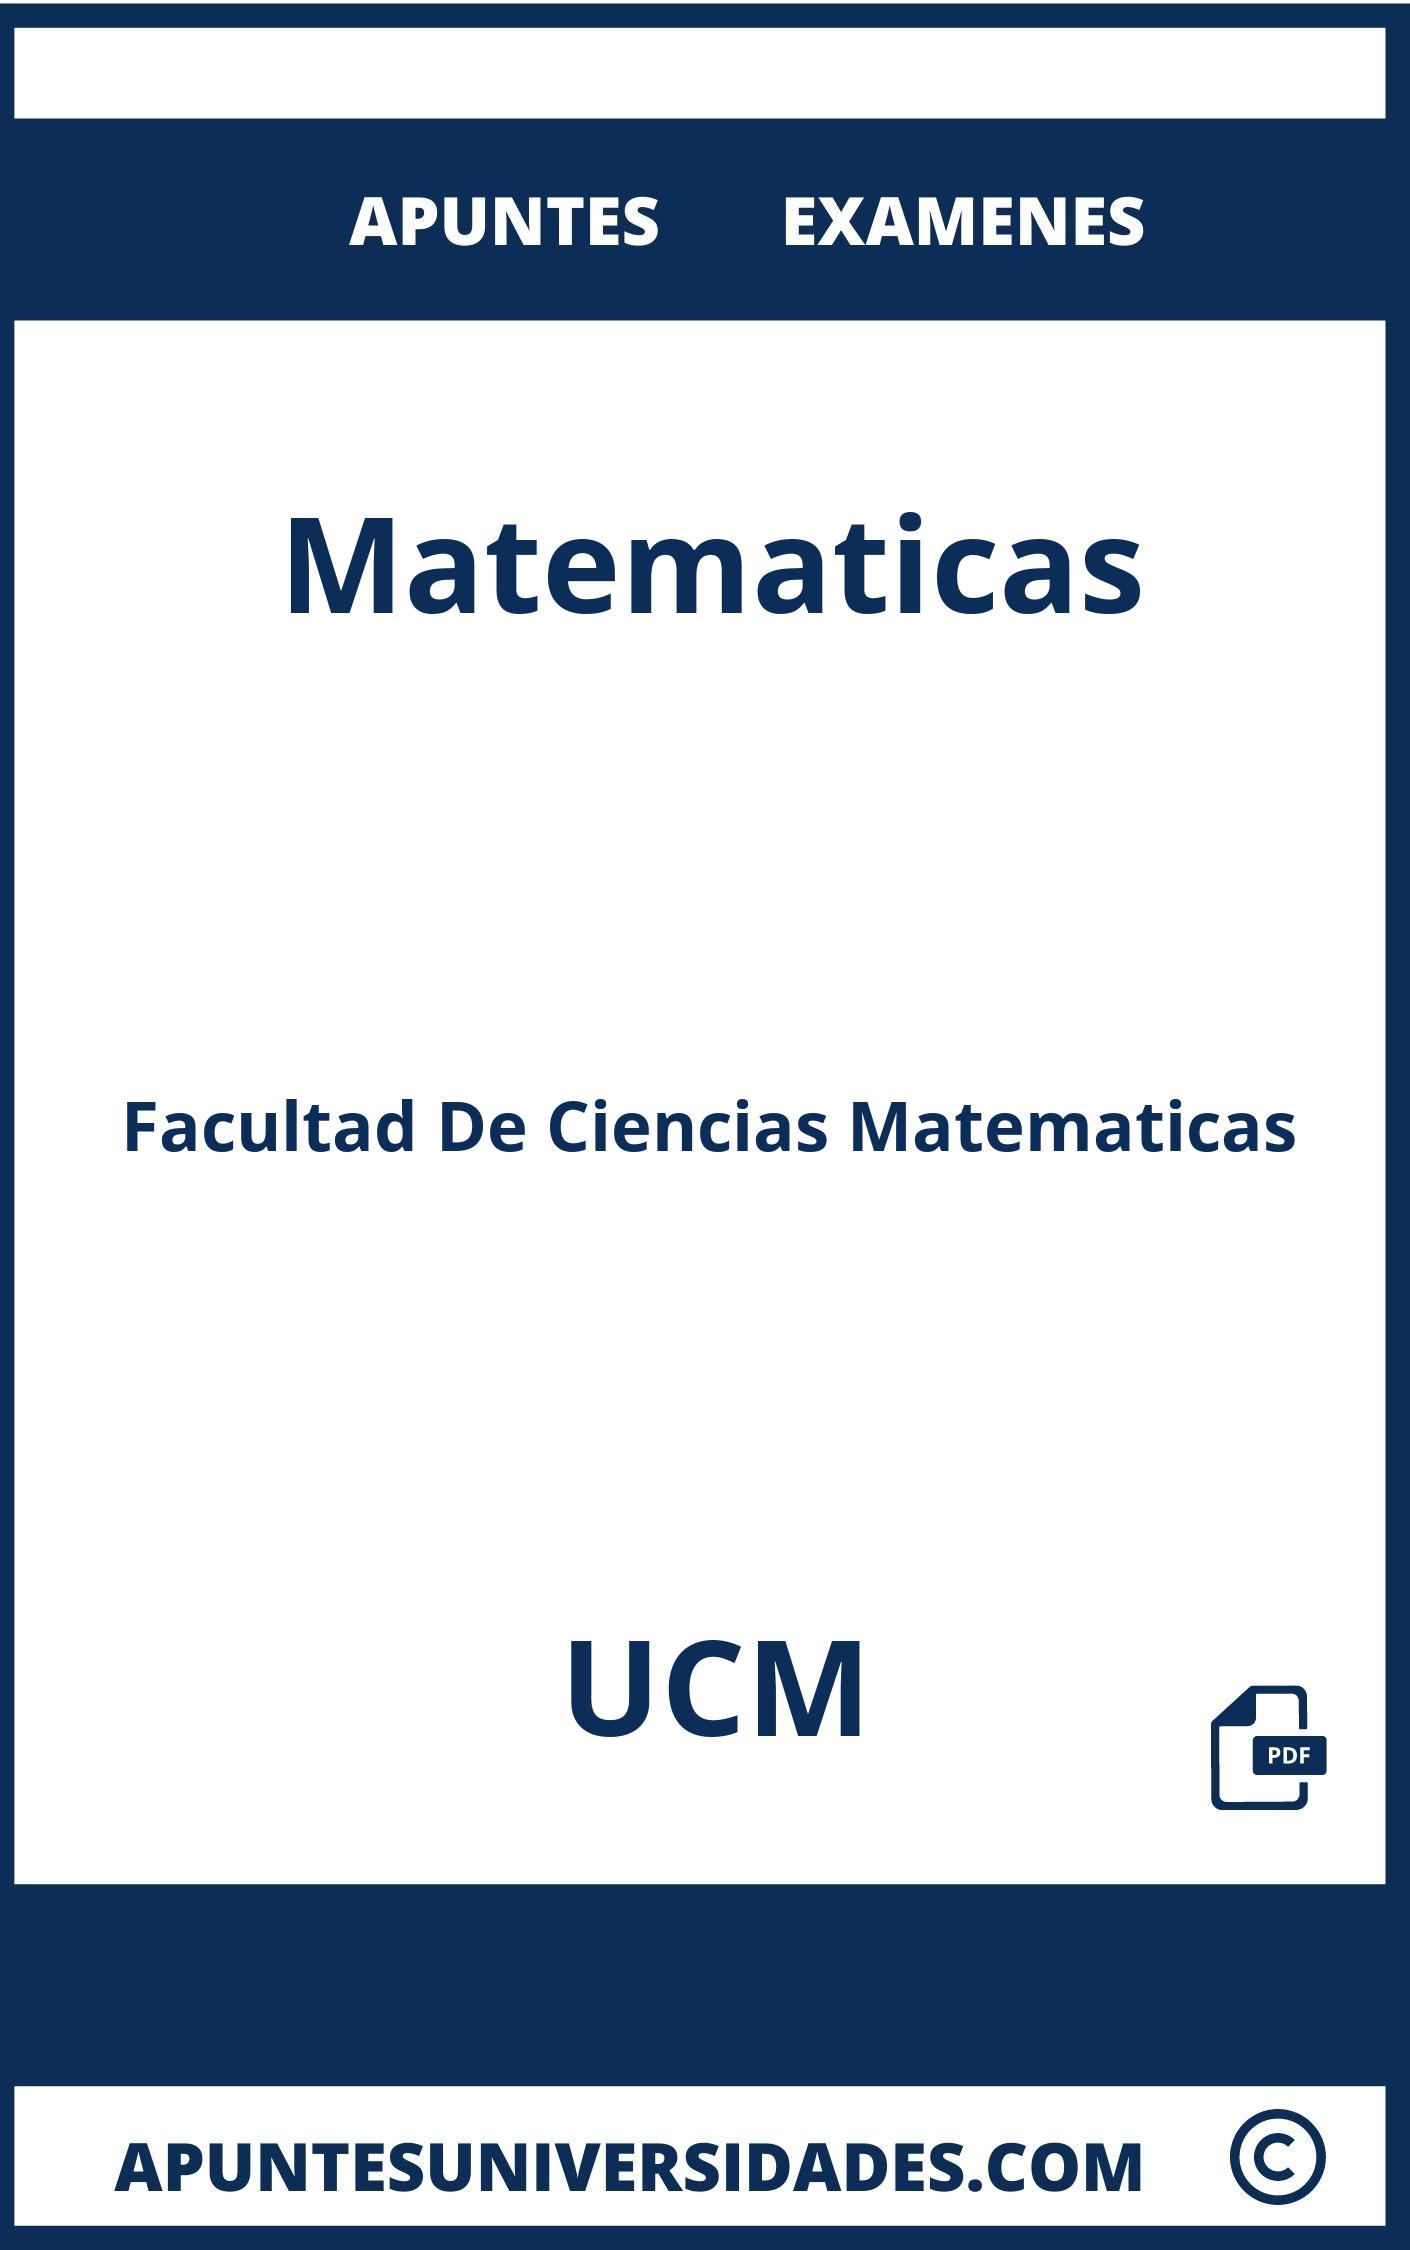 Apuntes Matematicas UCM y Examenes